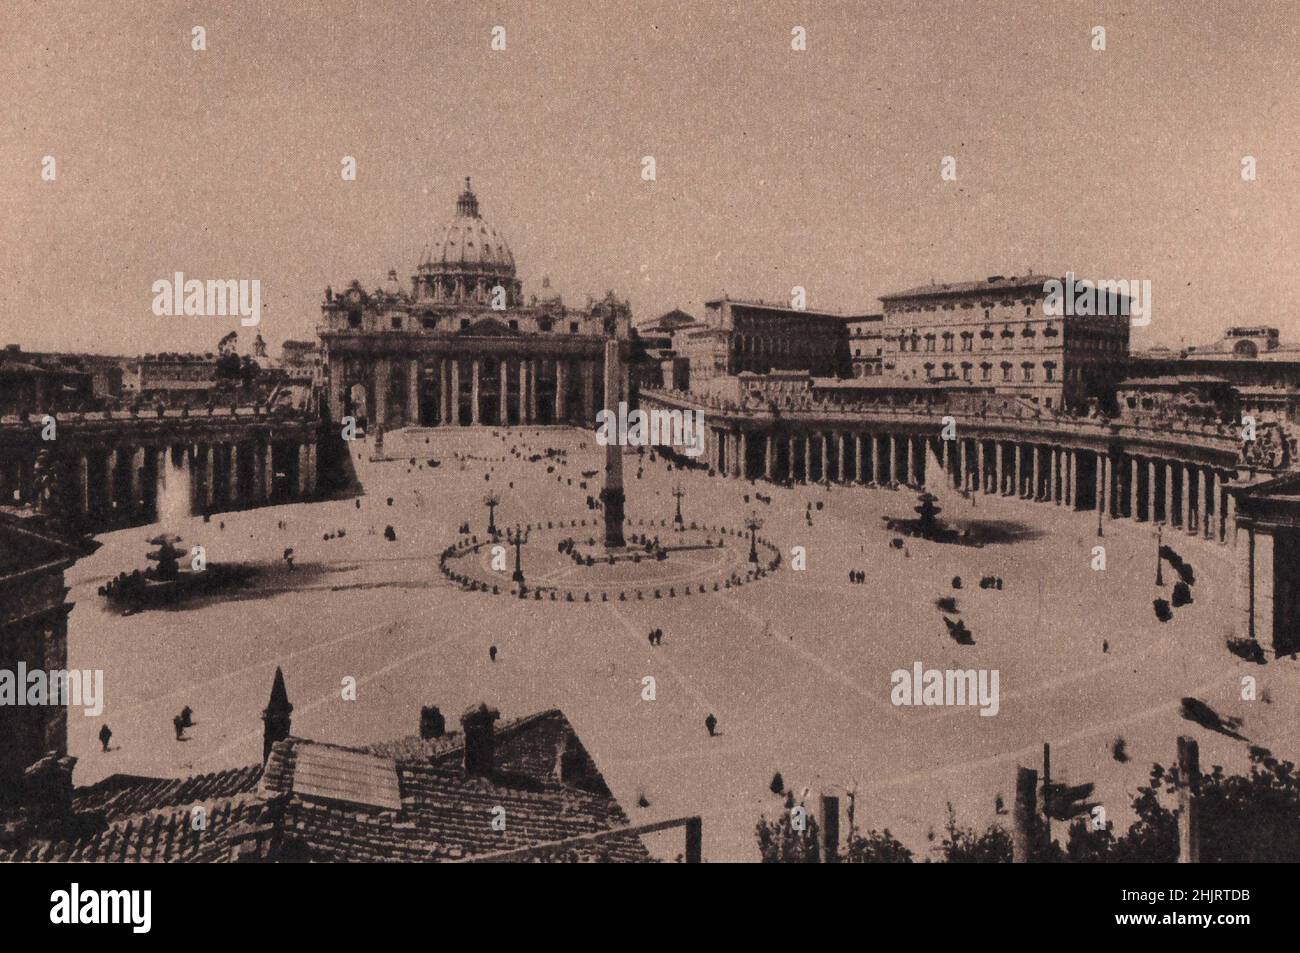 Derrière l'obélisque de la splendide Piazza di San Pietro se trouve Saint-Pierre, l'église principale de la chrétienté catholique romaine. Rome (1923) Banque D'Images